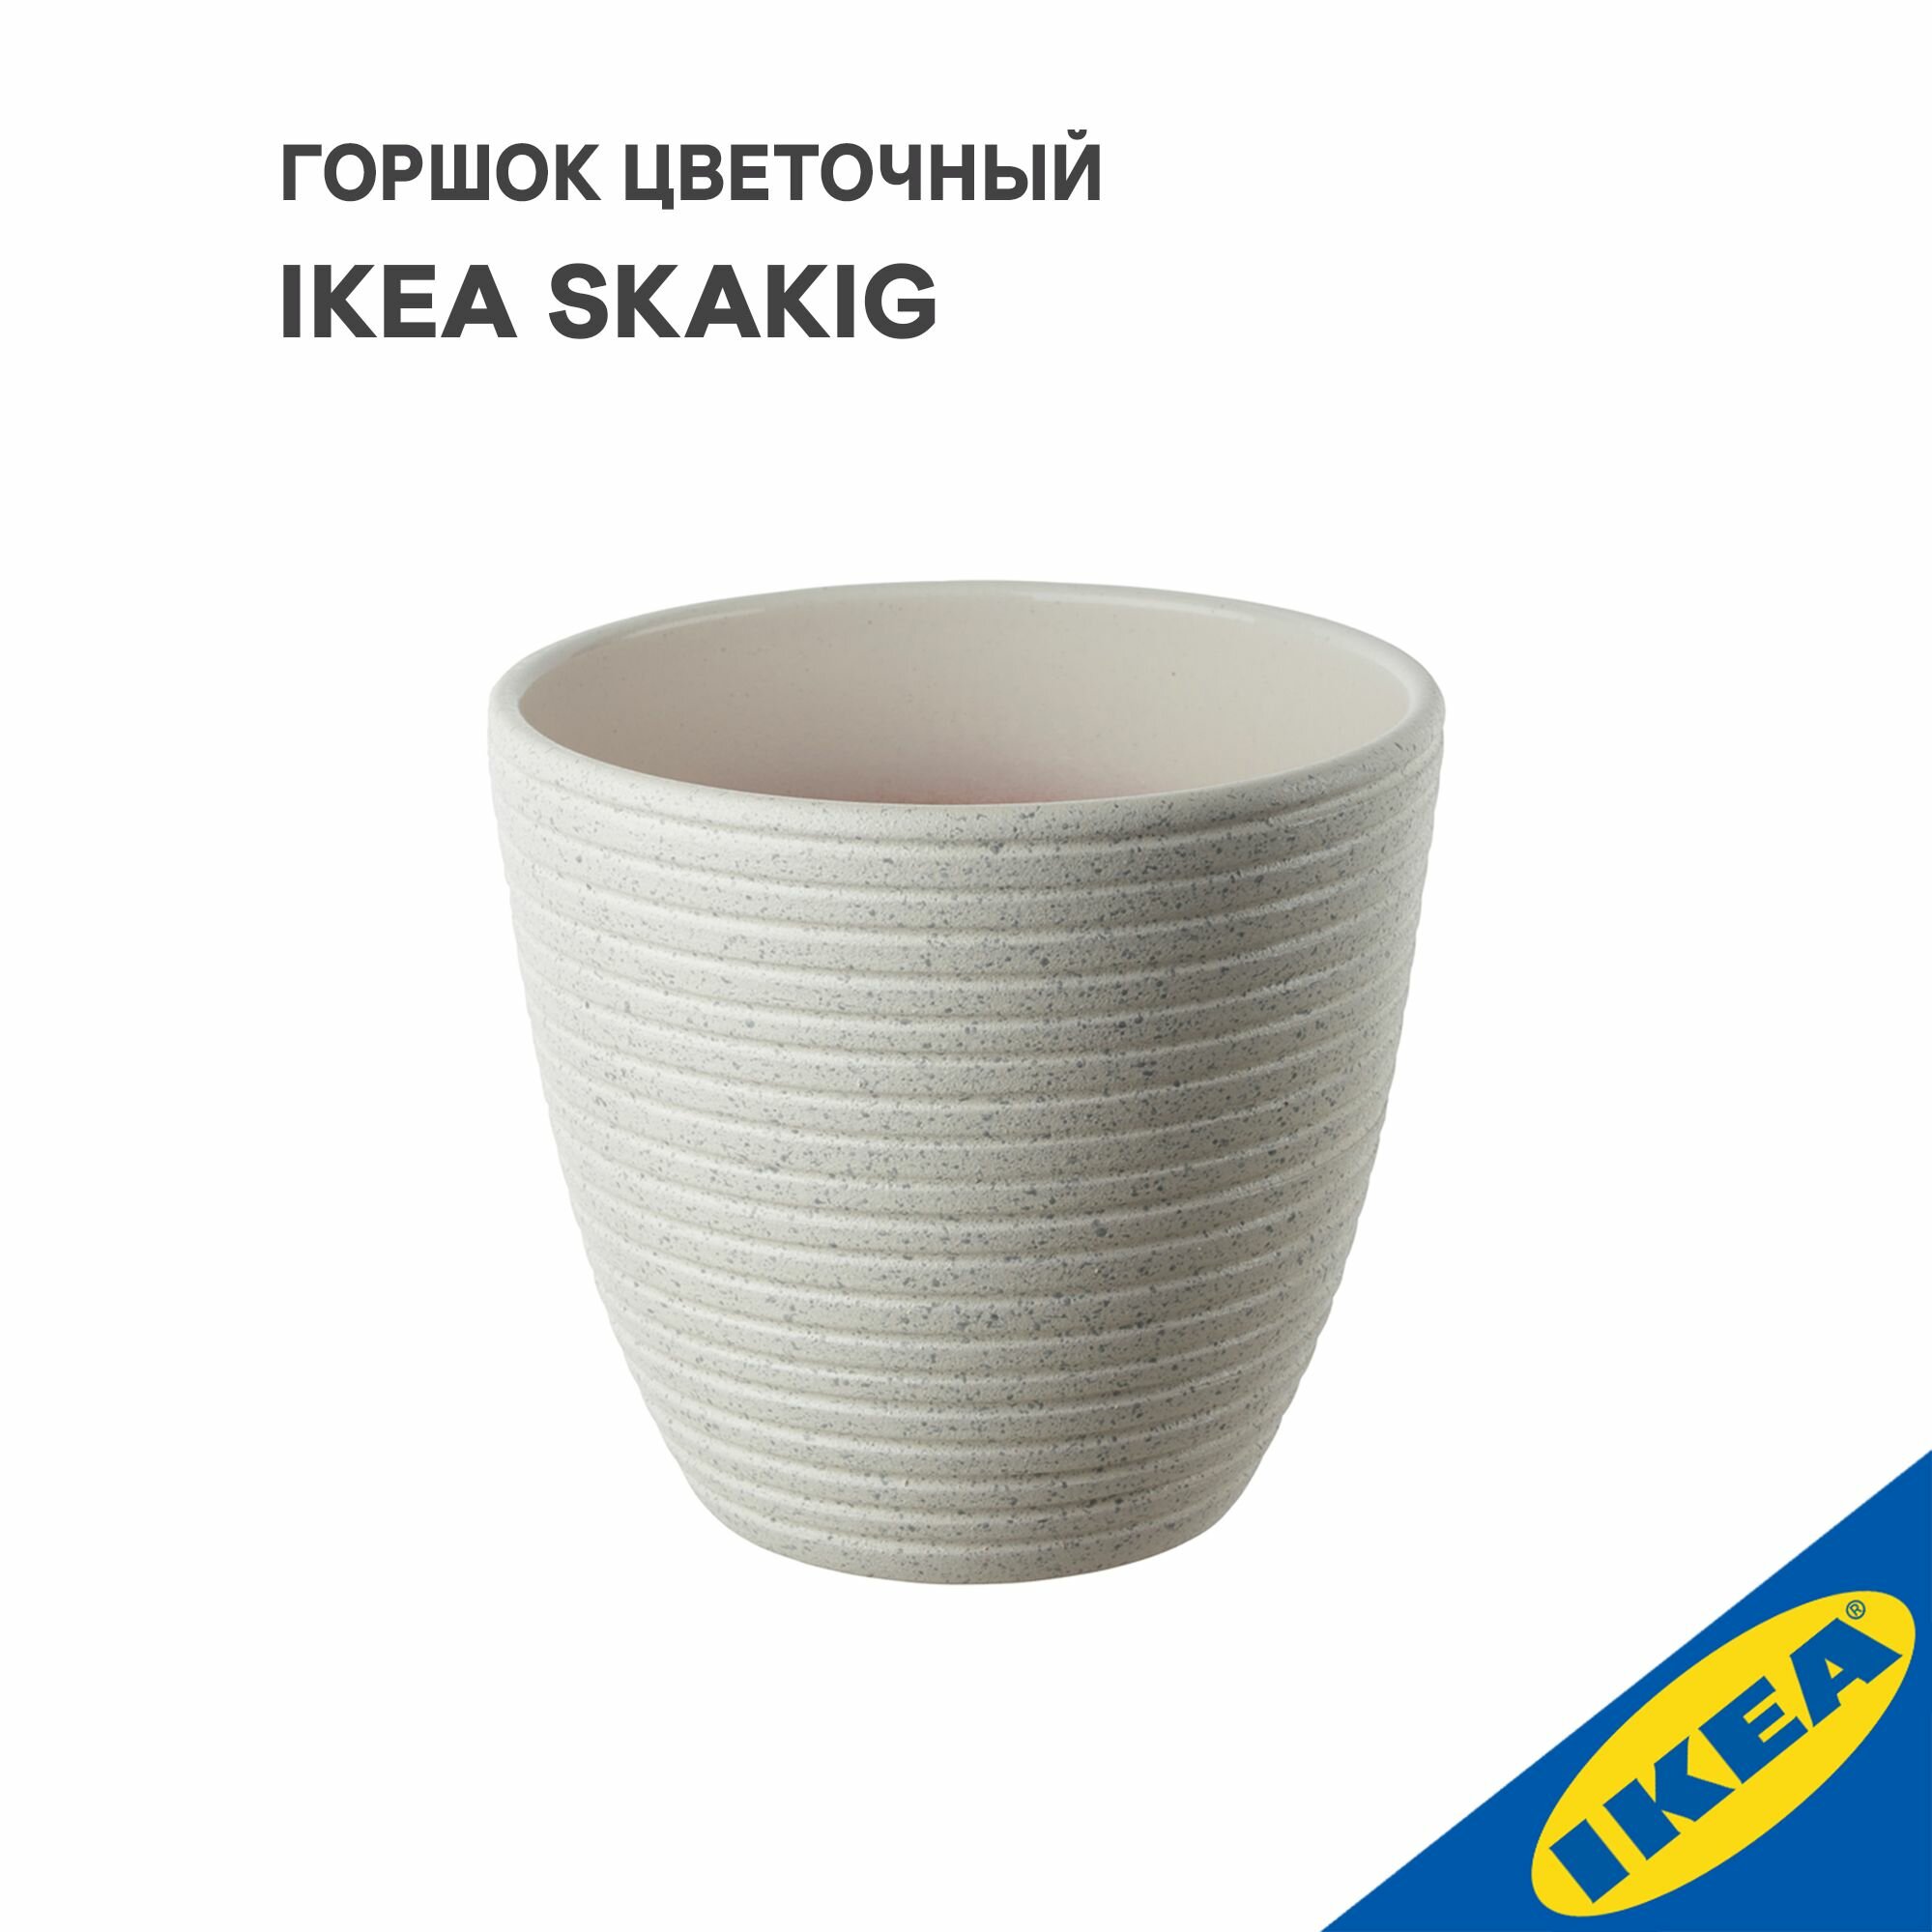 Горшок цветочный IKEA SKAKIG скакиг, 12x13 см, белый